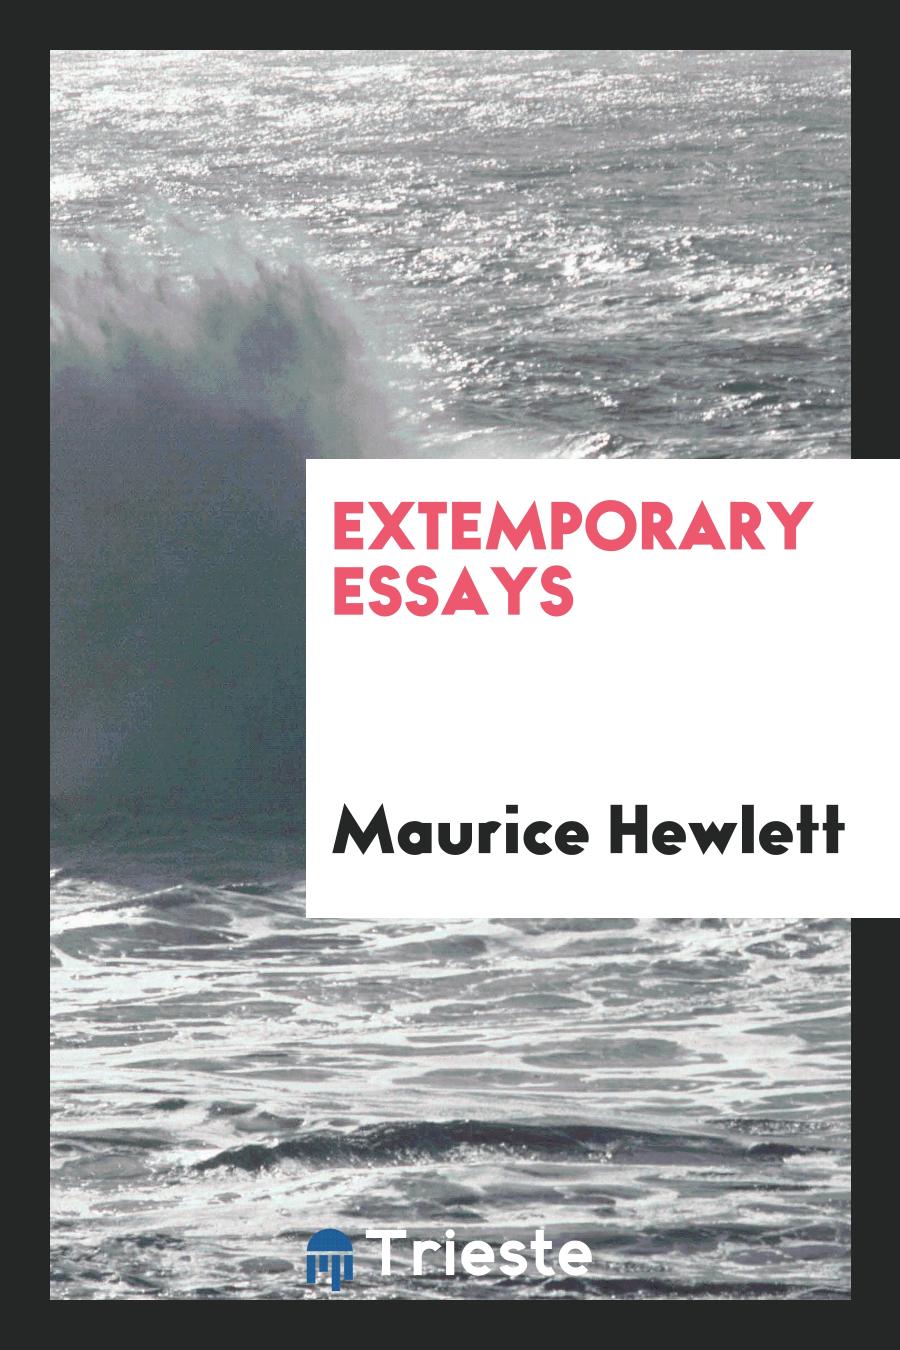 Extemporary essays